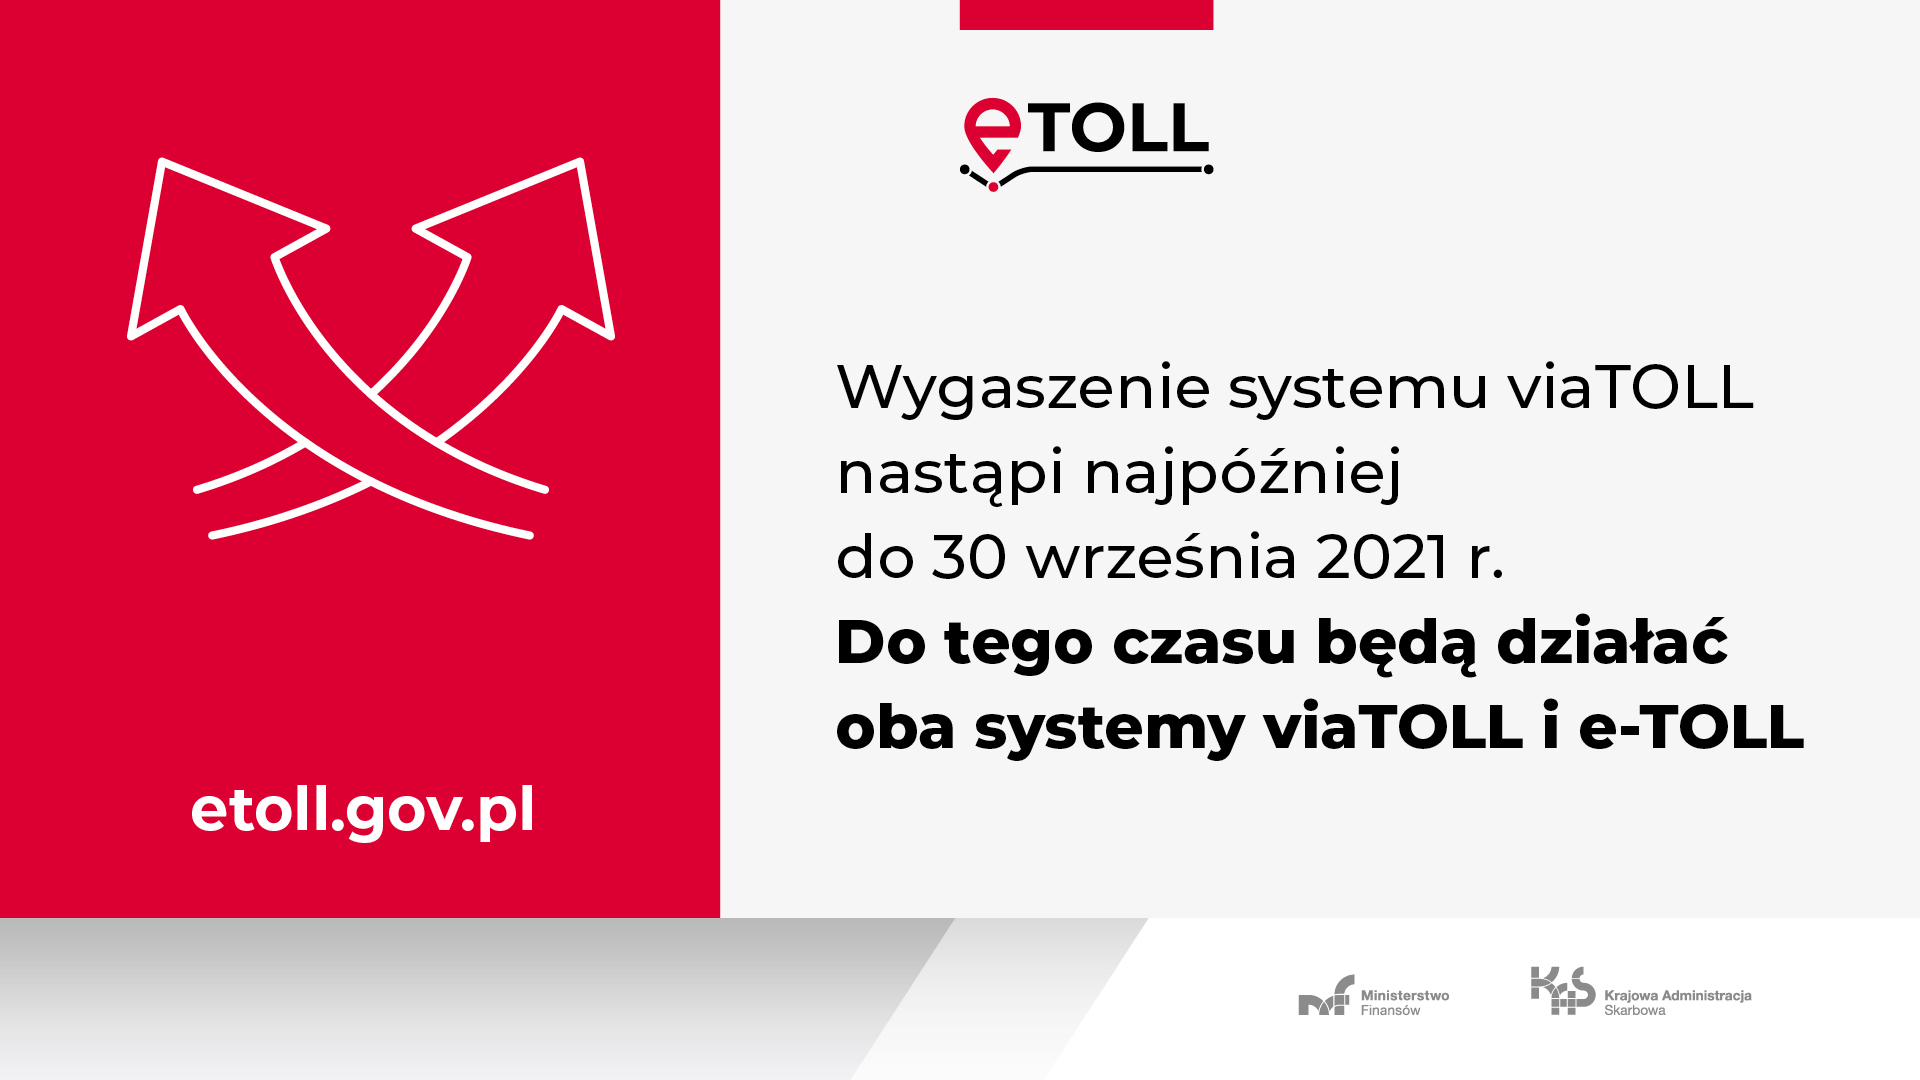 Czerwono-biała grafika eTOLL. na czerwonym tle dwie strzałki i napis: etoll.gov.pl. Na białym polu symbol eTOLL i napisy.